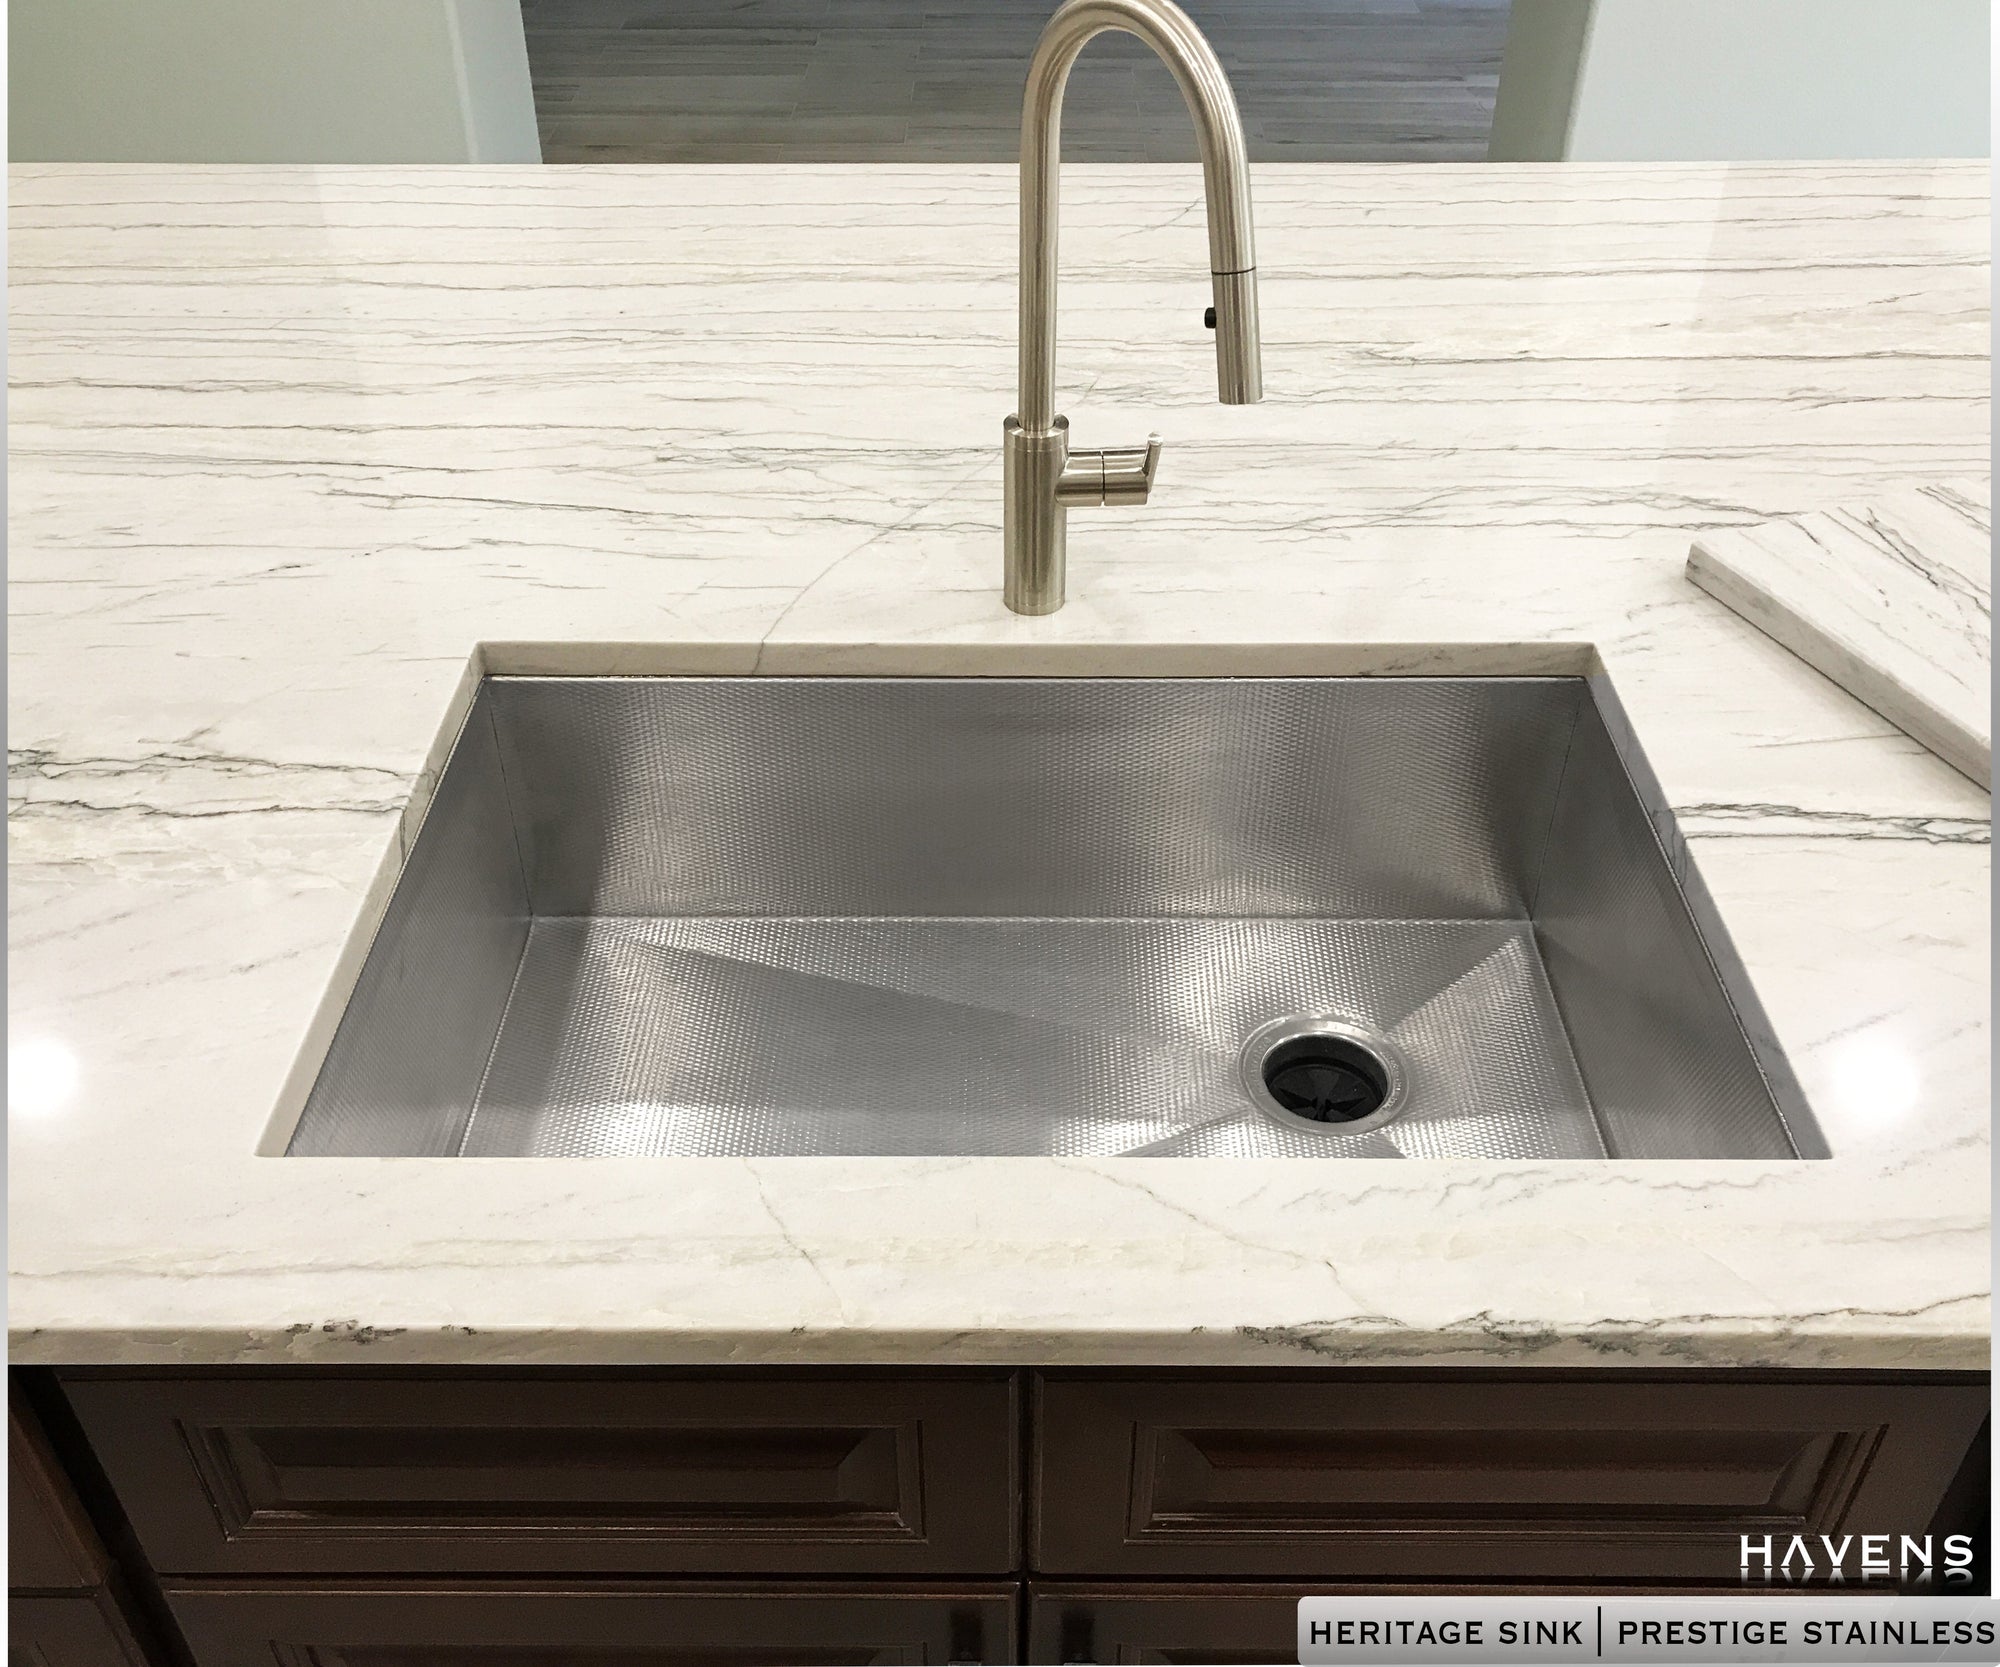 Undermount stainless steel kitchen sink under white granite countertops. Textured 16 gauge stainless steel